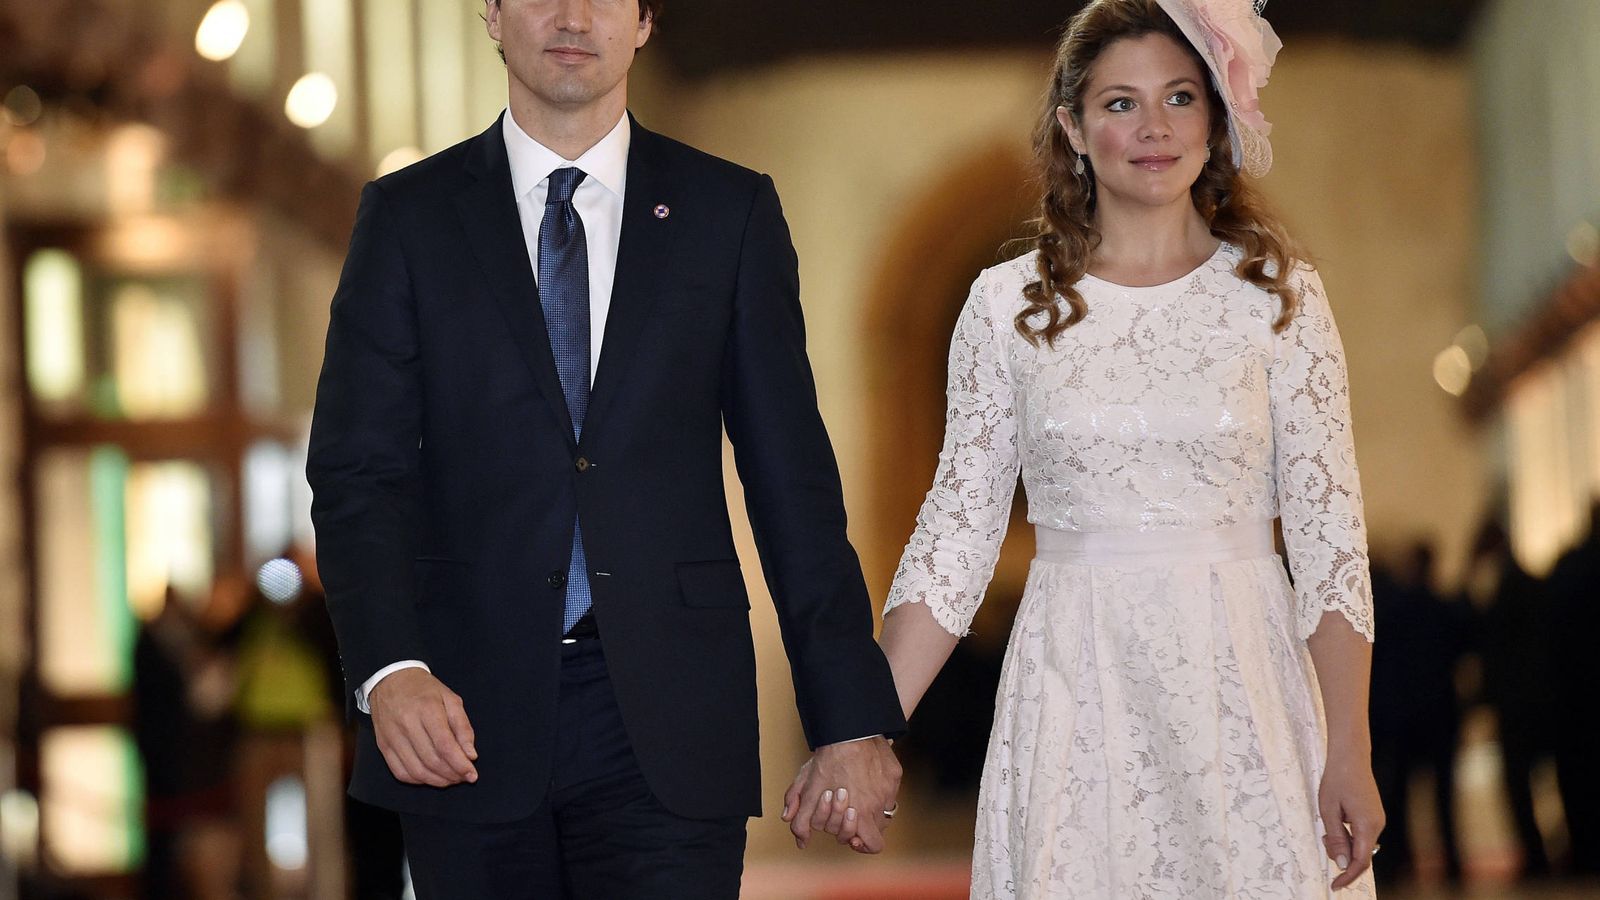 Foto: El primer ministro Trudeau, con su mujer. (Getty)